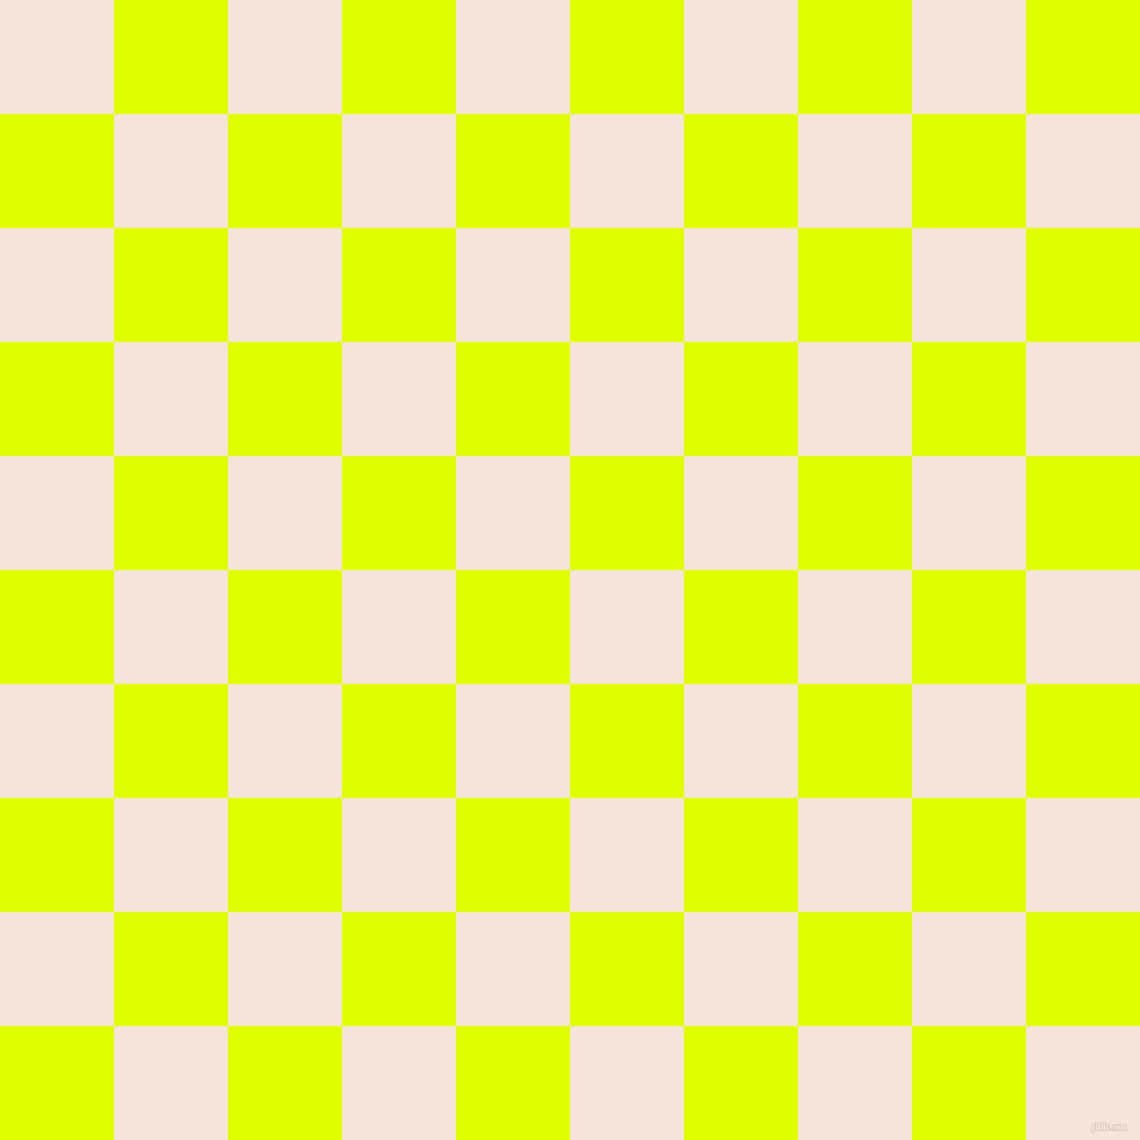 Checkers Board Empty Pattern Wallpaper